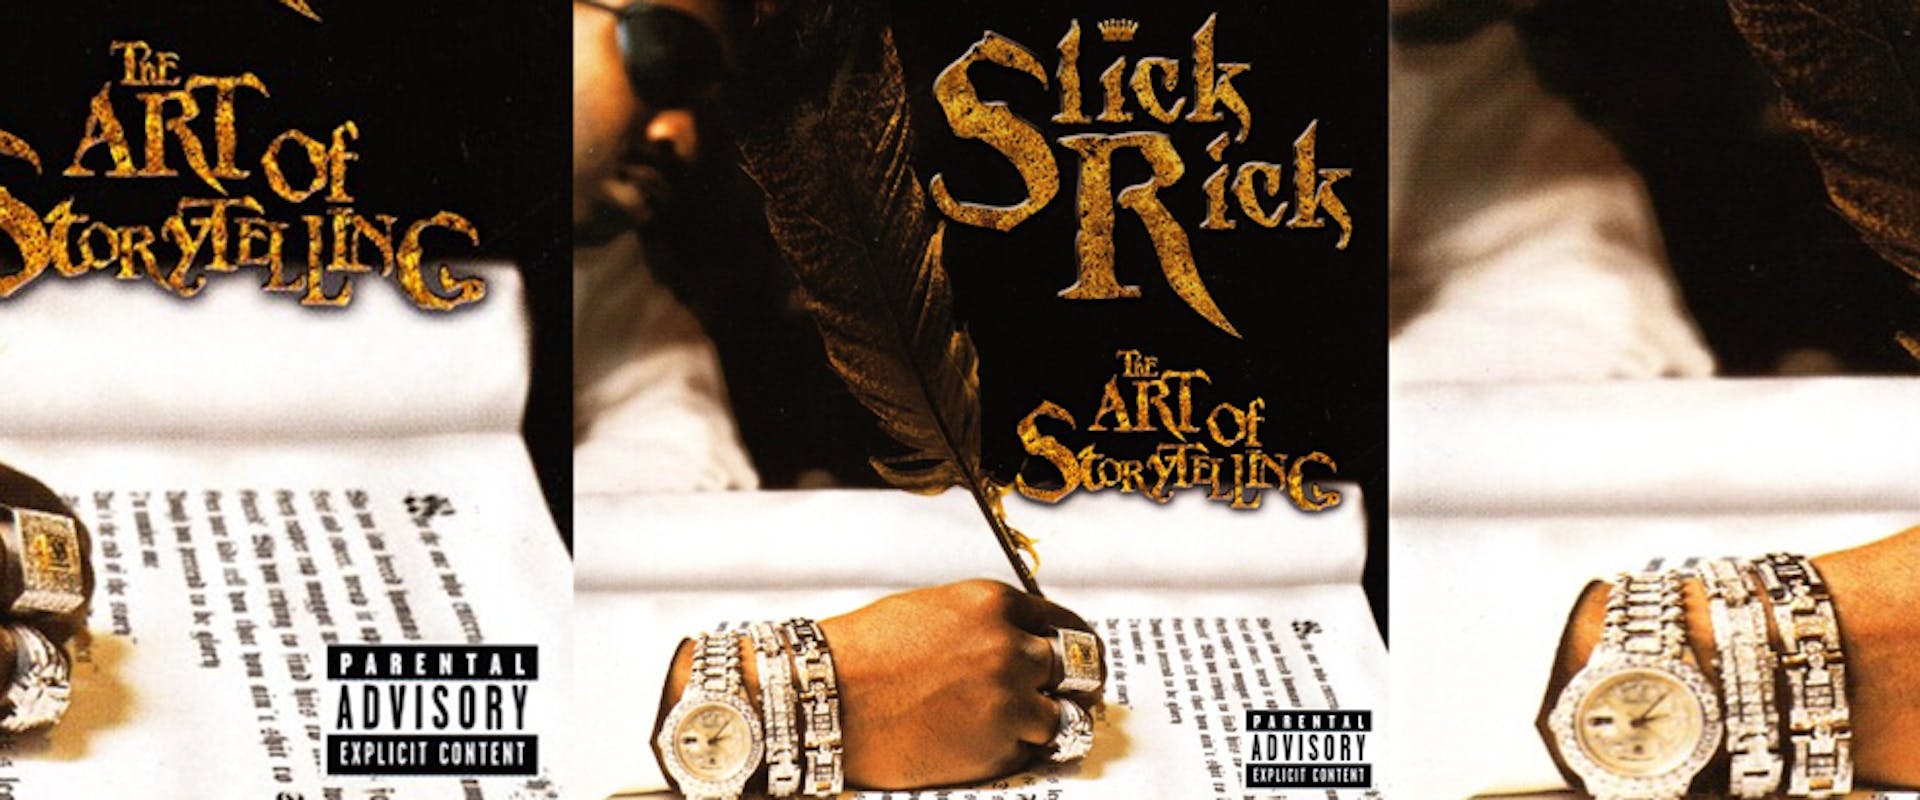 Slick Rick, The Art of Storytelling